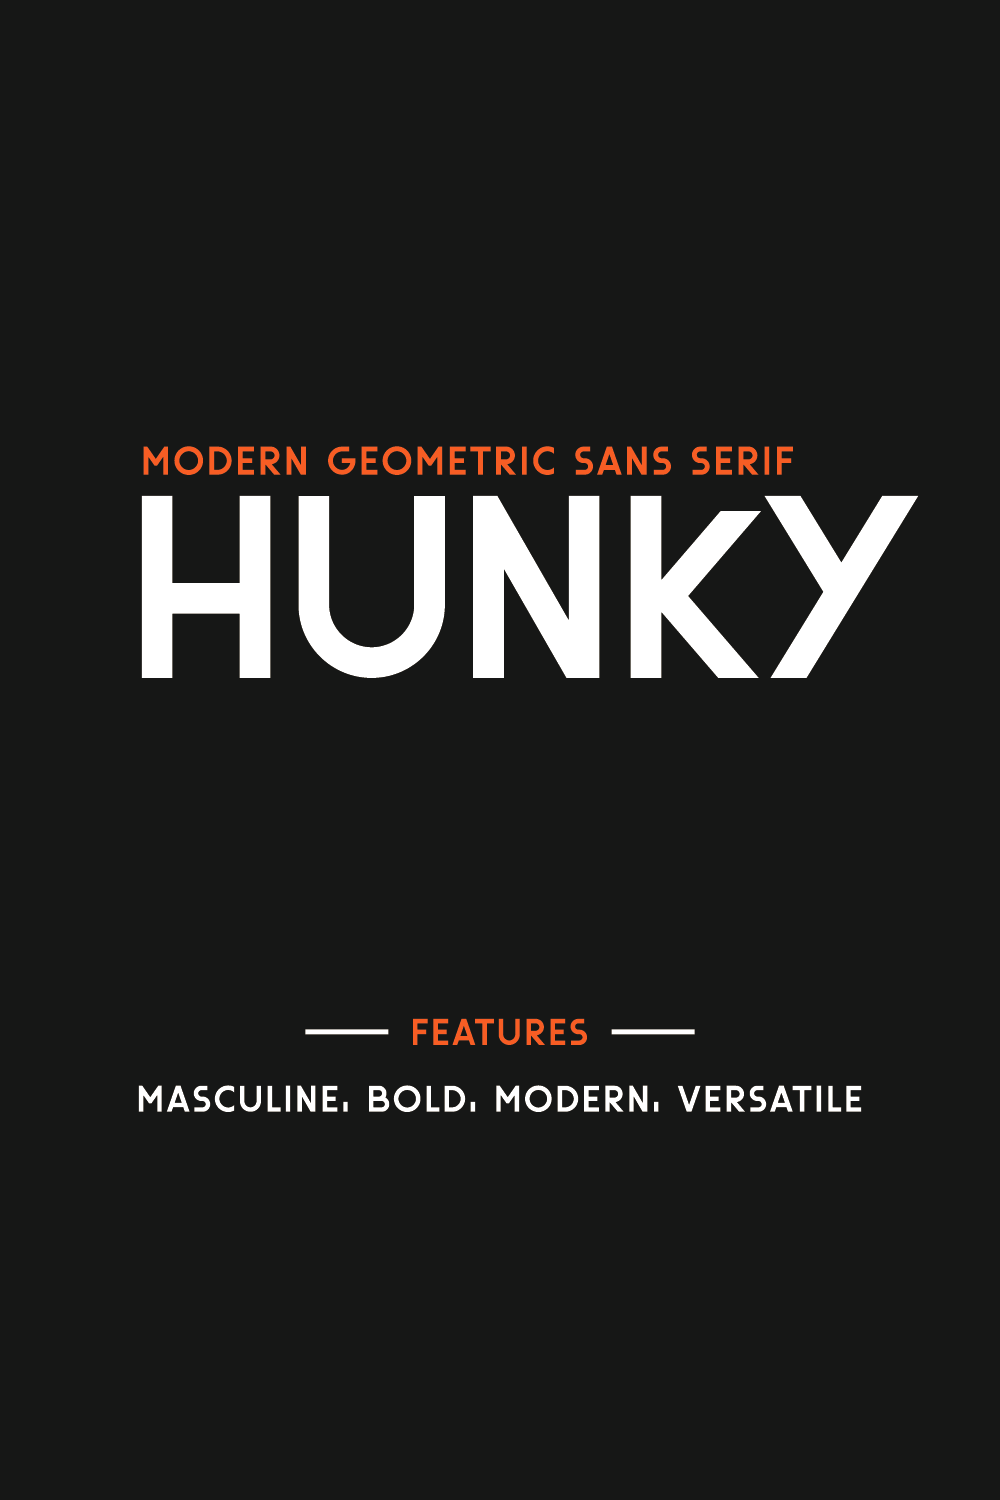 Hunky-Geometric Sans Serif Font pinterest image.